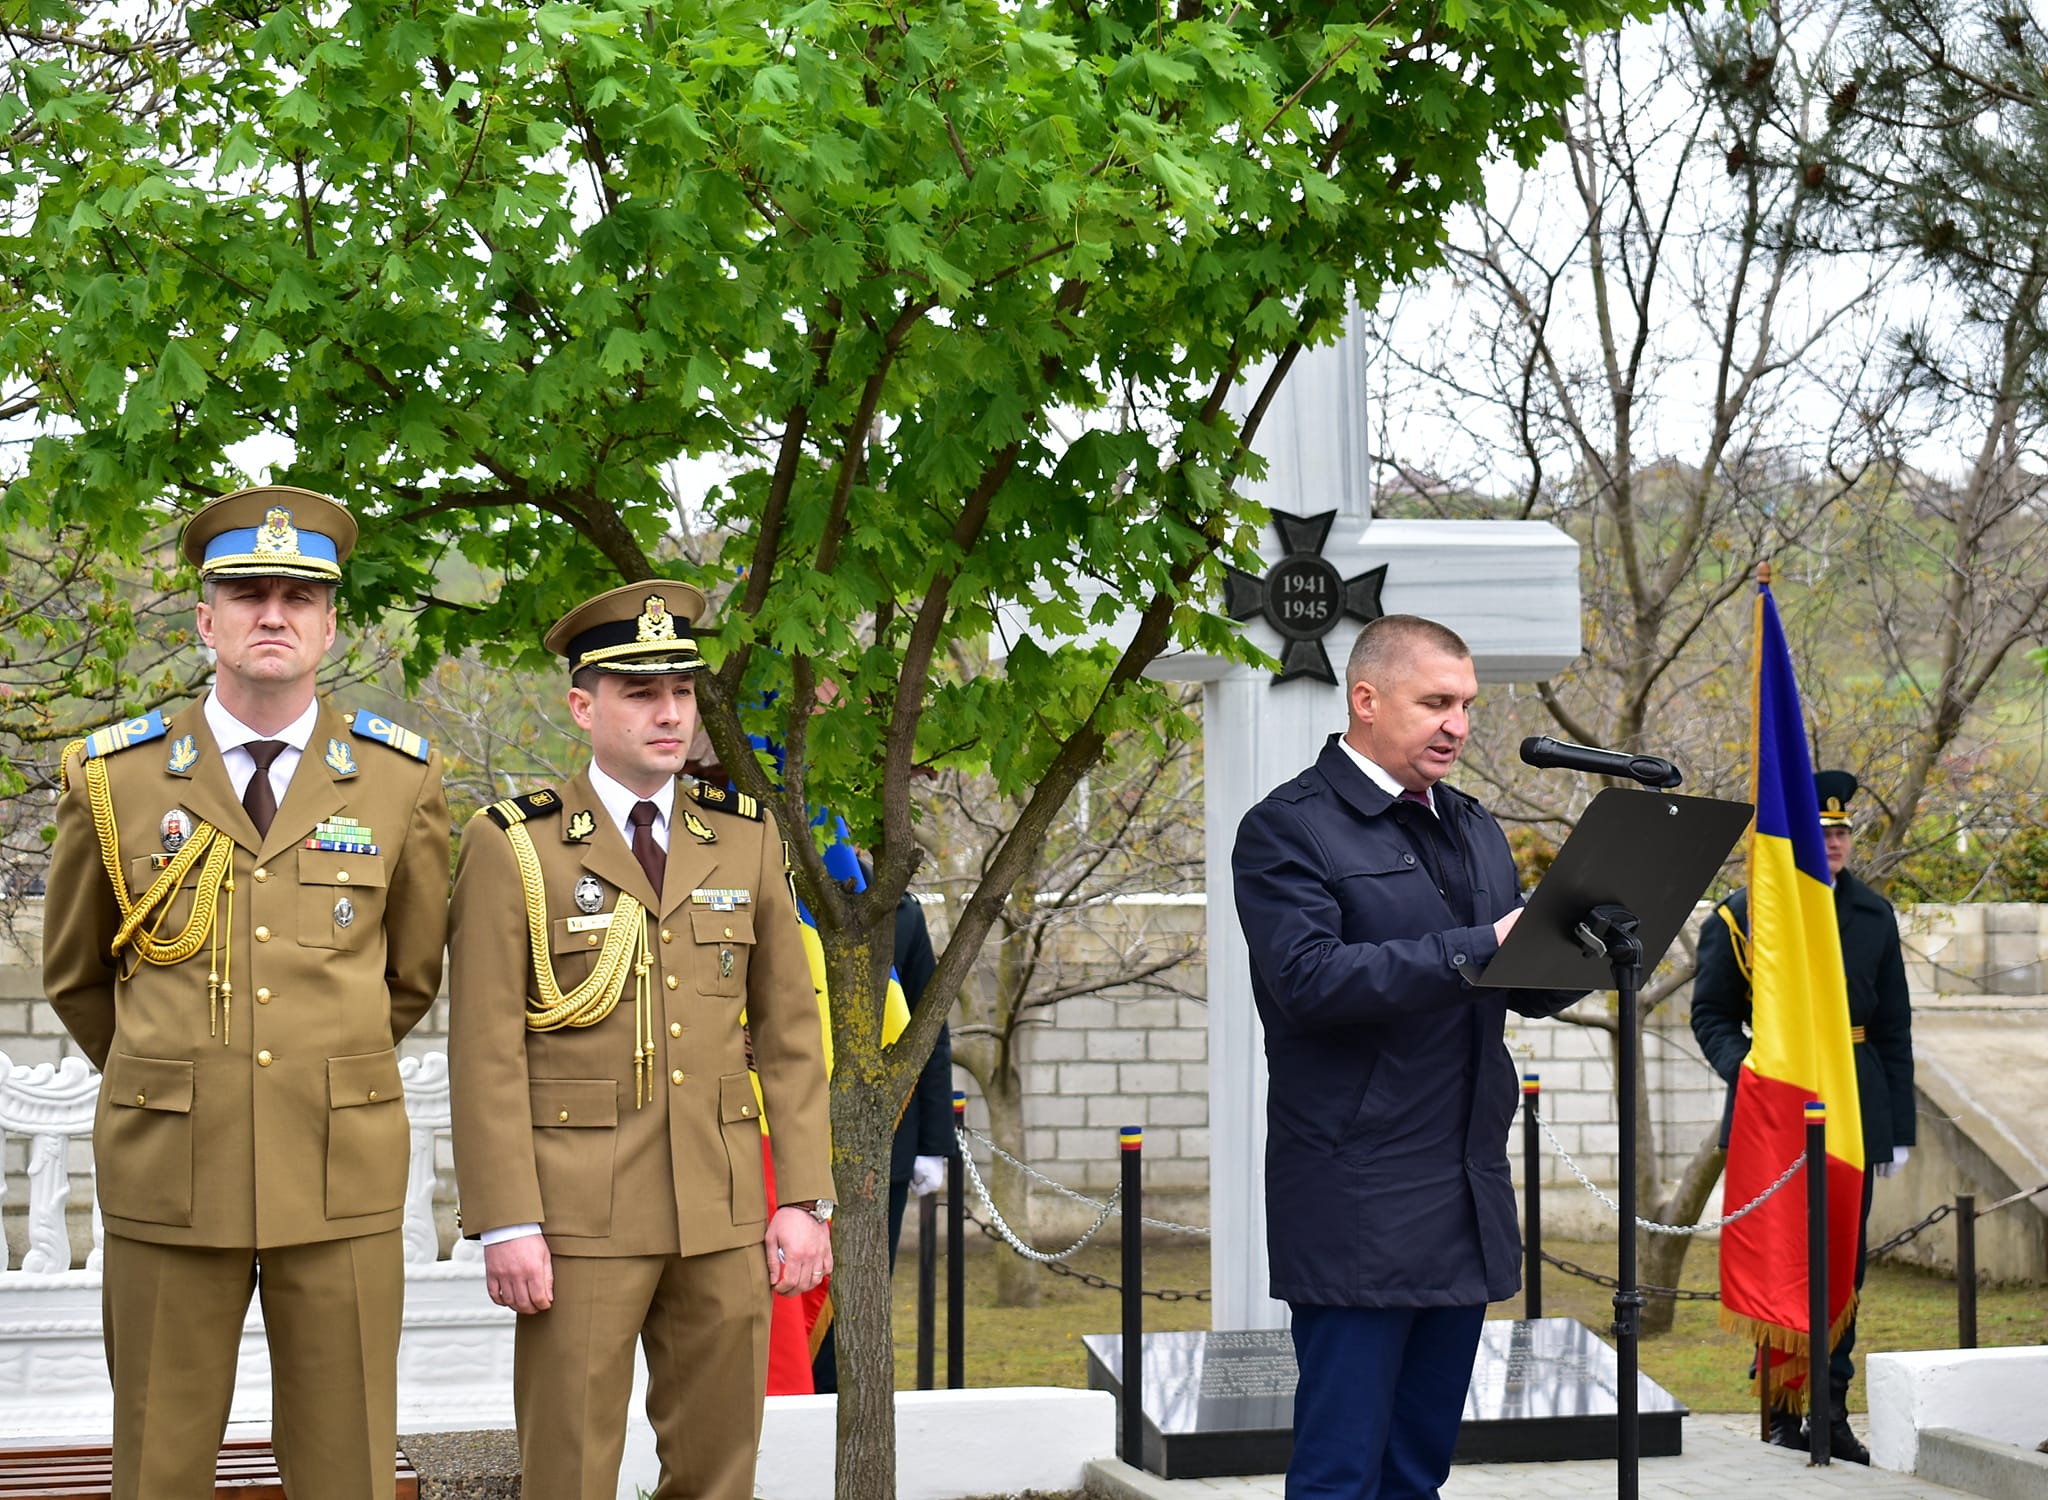 (ФОТО) В Хынчештах открыли памятник героям румынской армии